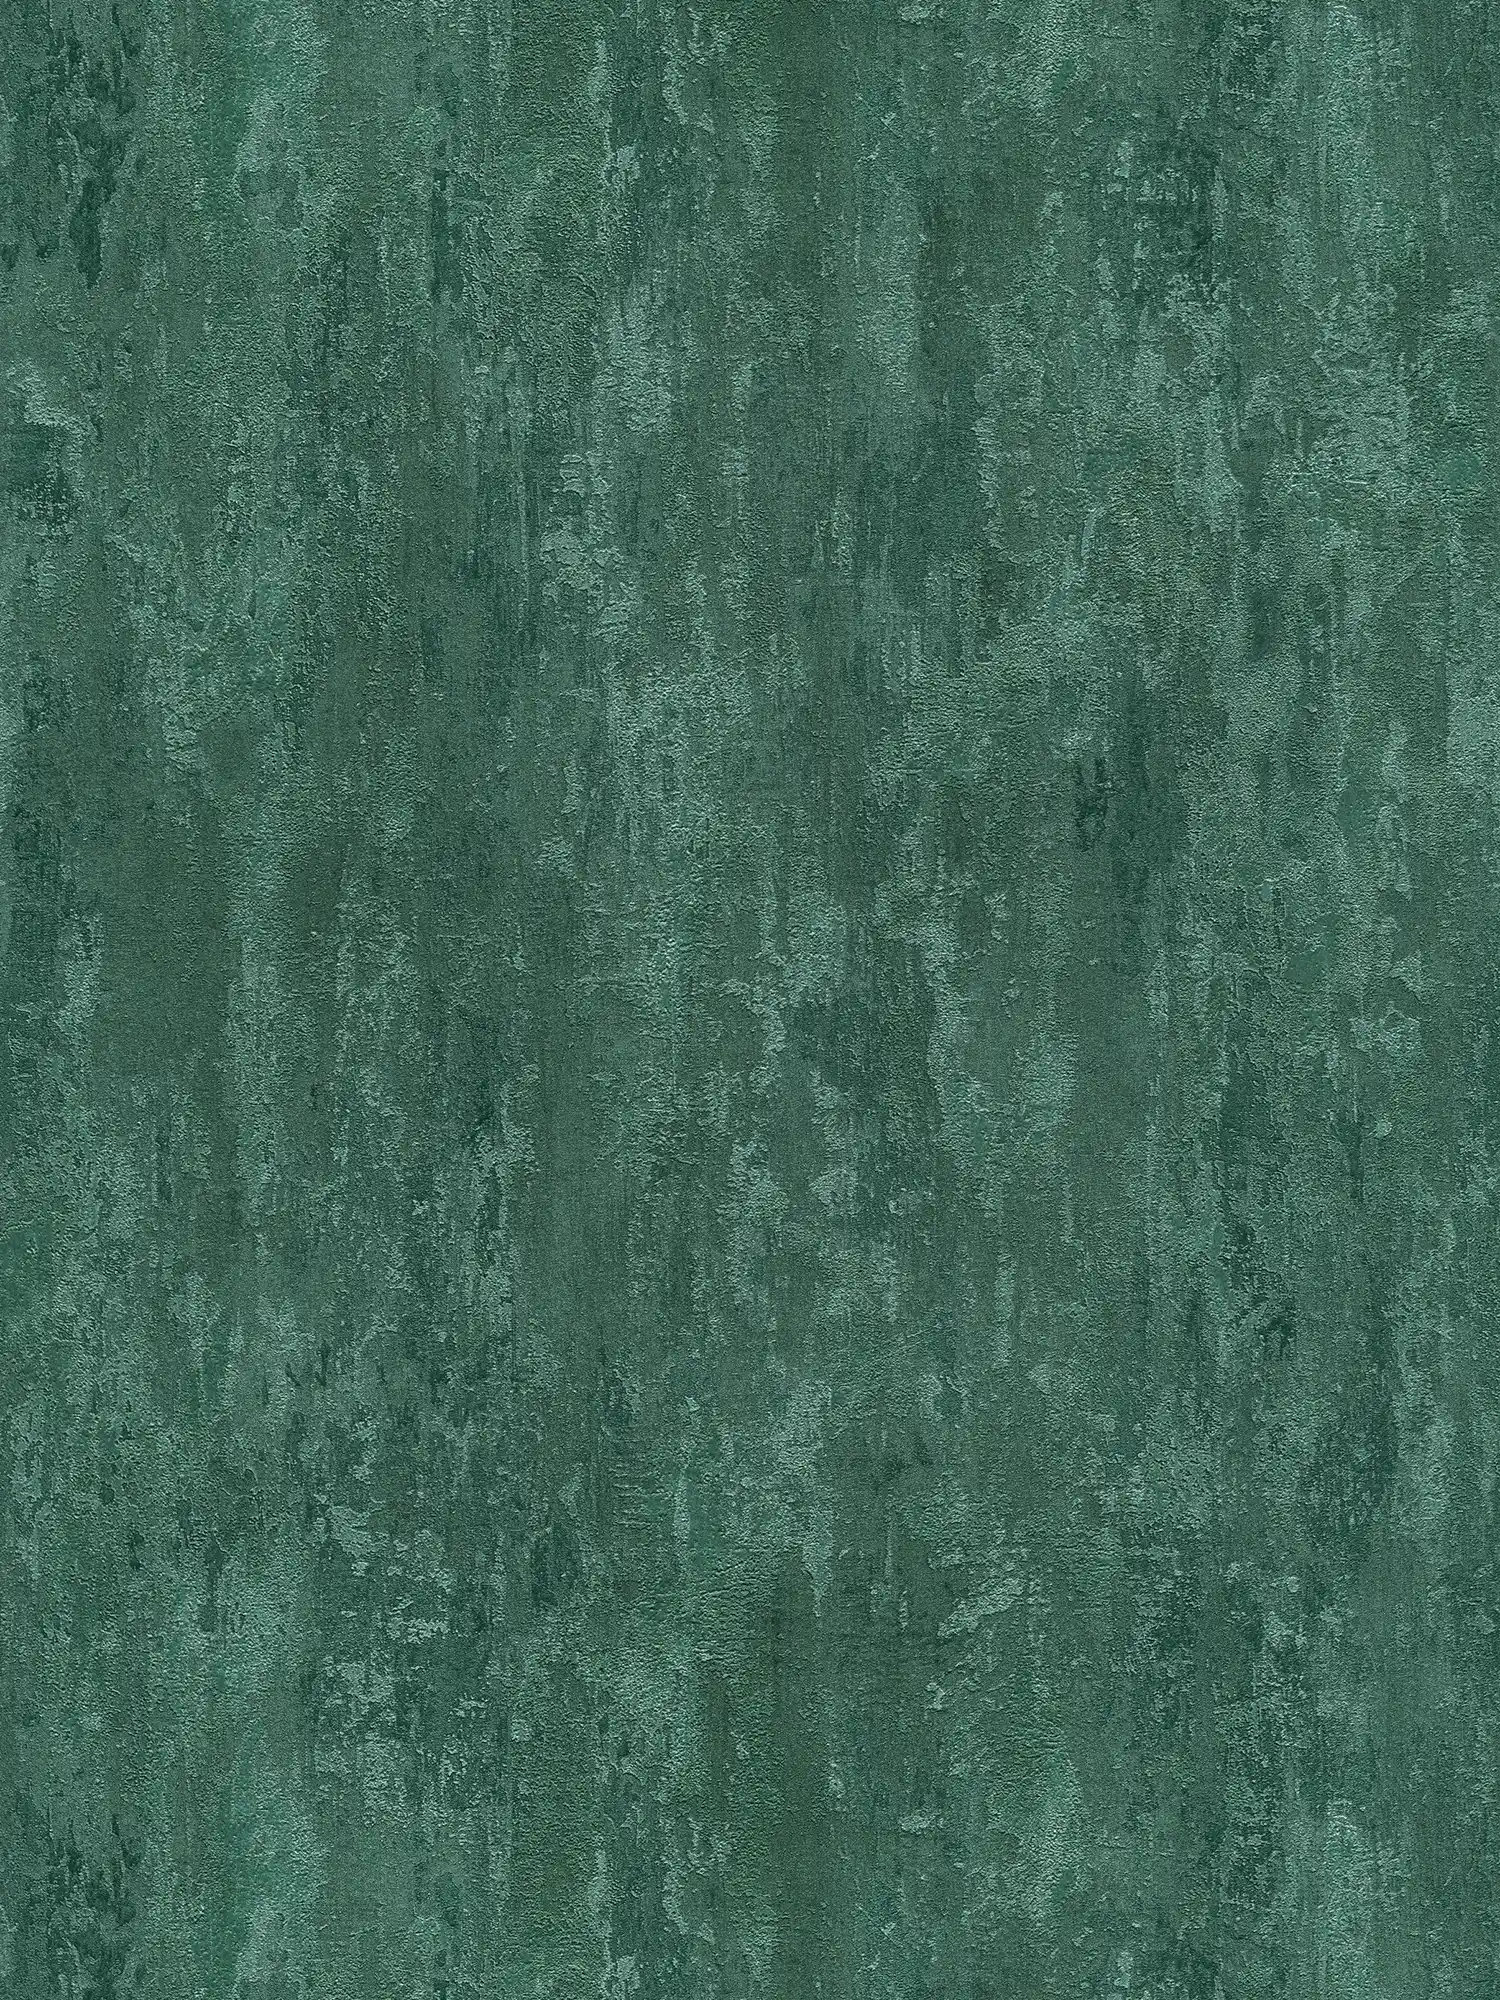         Papier peint style industriel avec effet structuré - vert, métallique
    